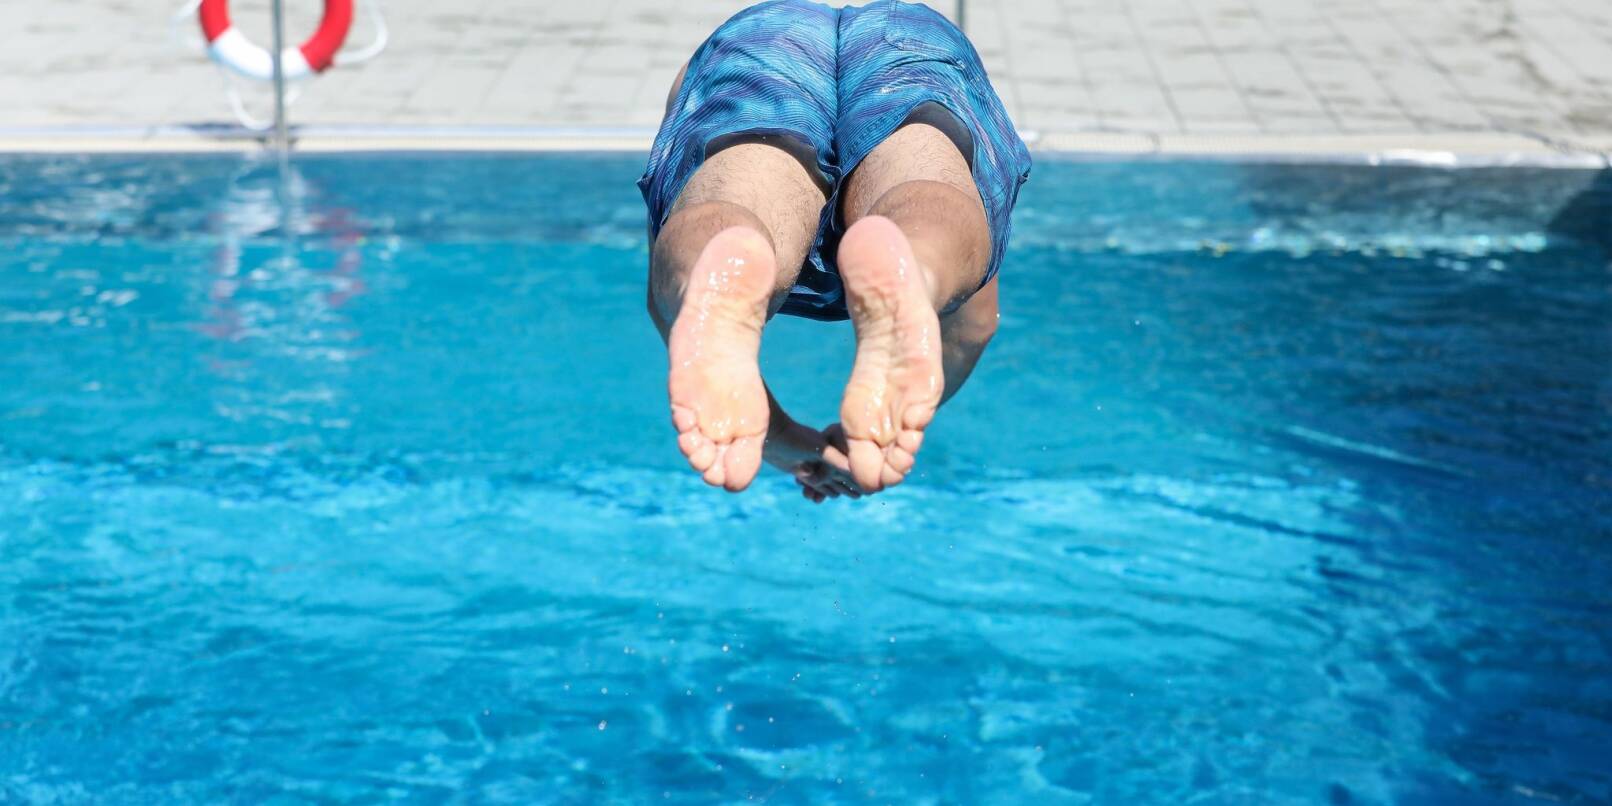 Ein Mann springt von einem Sprungbrett kopfüber ins Wasser.